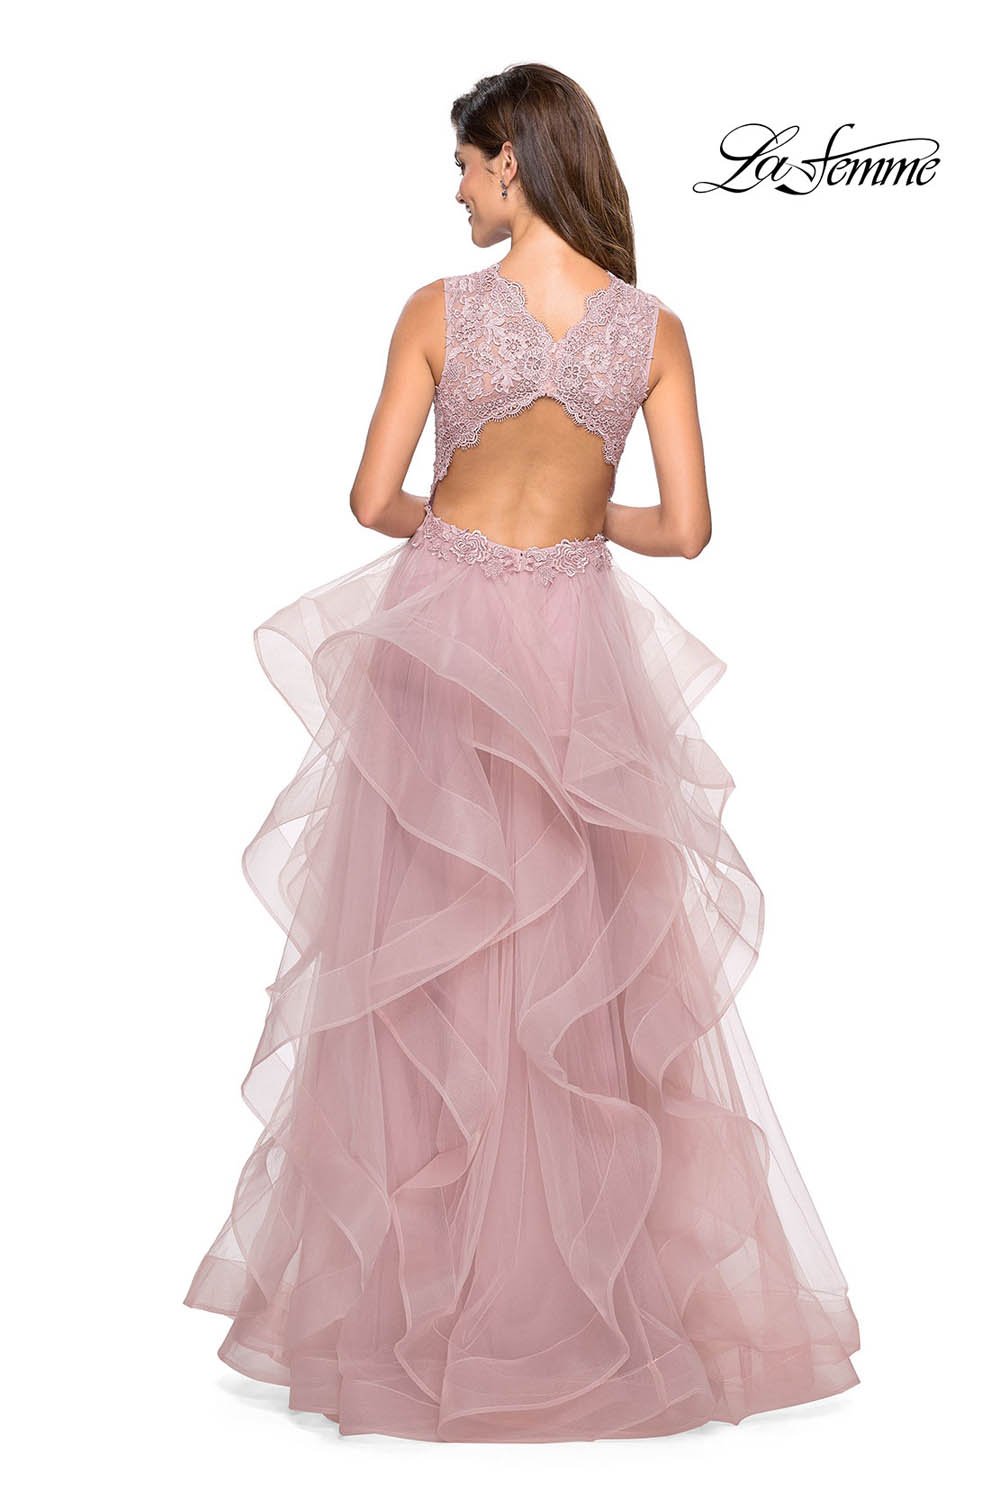 La Femme 27570 dress images in these colors: Lilac Mist, Mauve, Platinum, White.